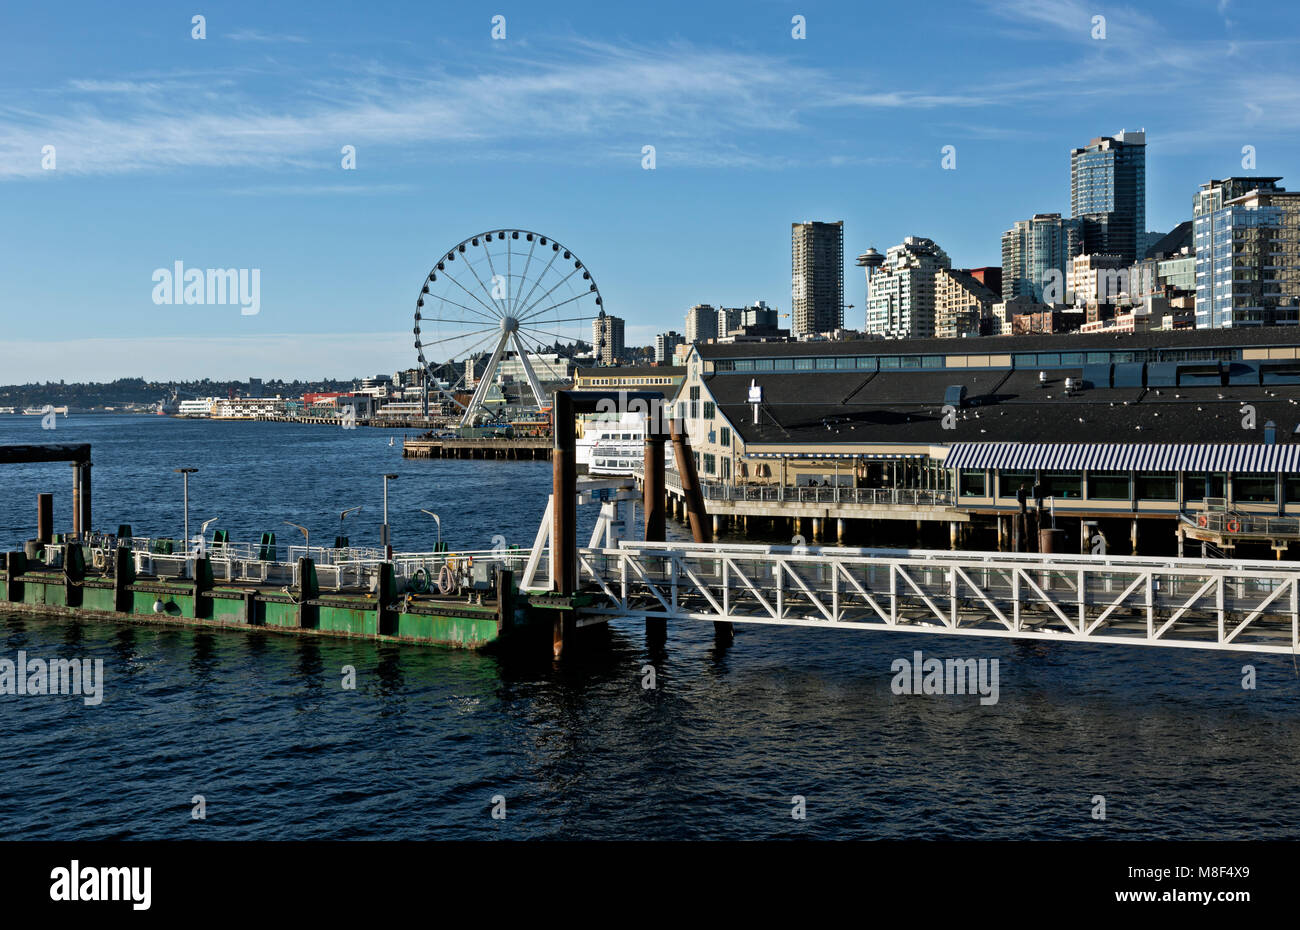 WA13882-00...WASHINGTON - il lungomare di Seattle su Elliott Bay con il molo dei taxi d'acqua, la Great Wheel e i grattacieli del centro. 2017 Foto Stock